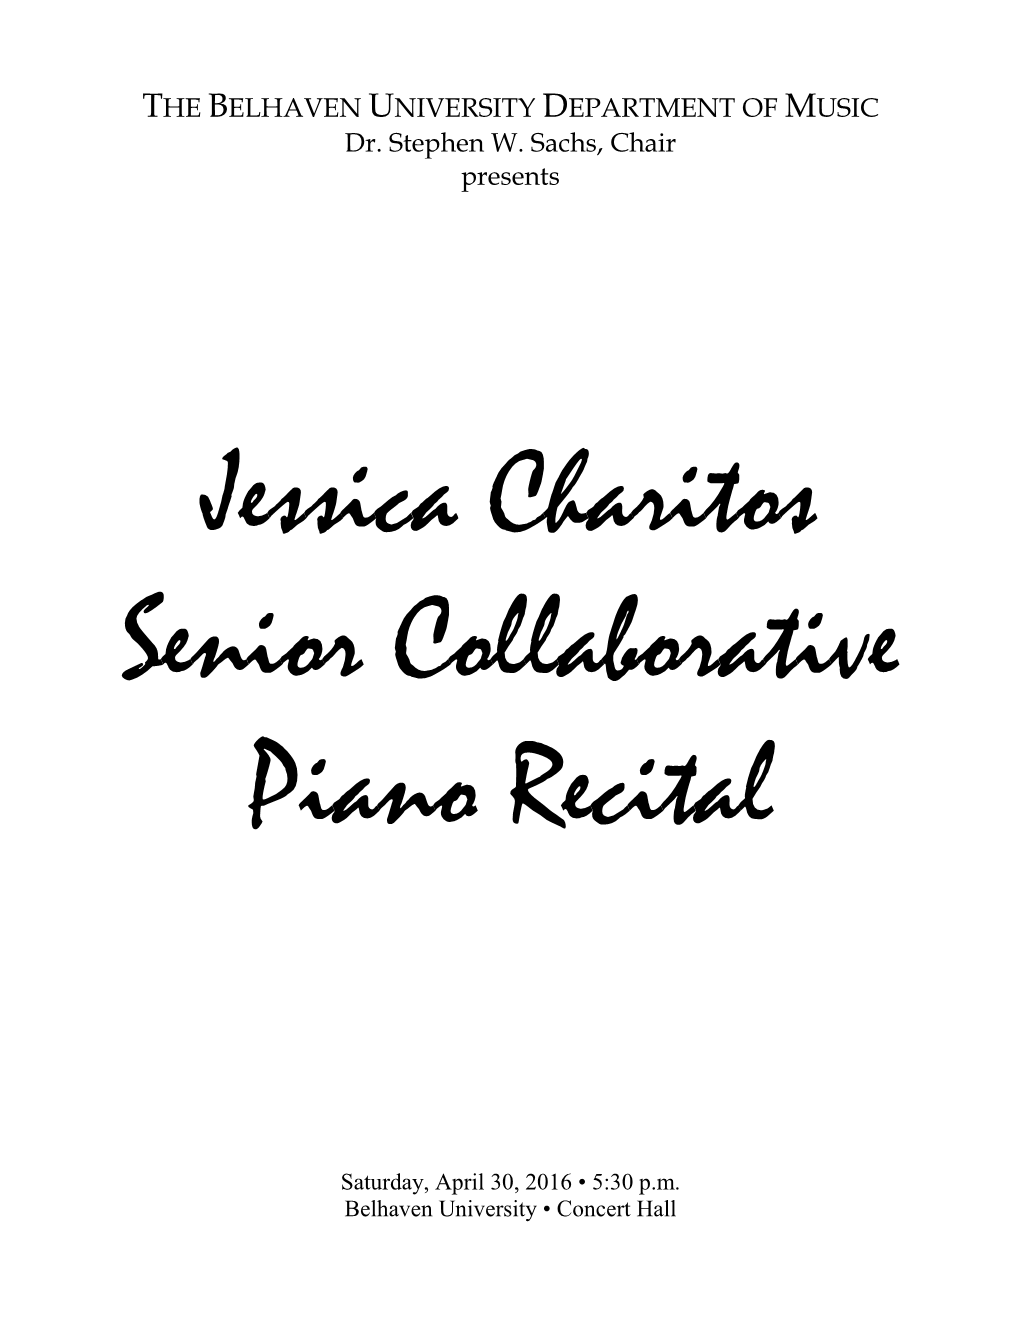 Jessica Charitos Senior Collaborative Piano Recital